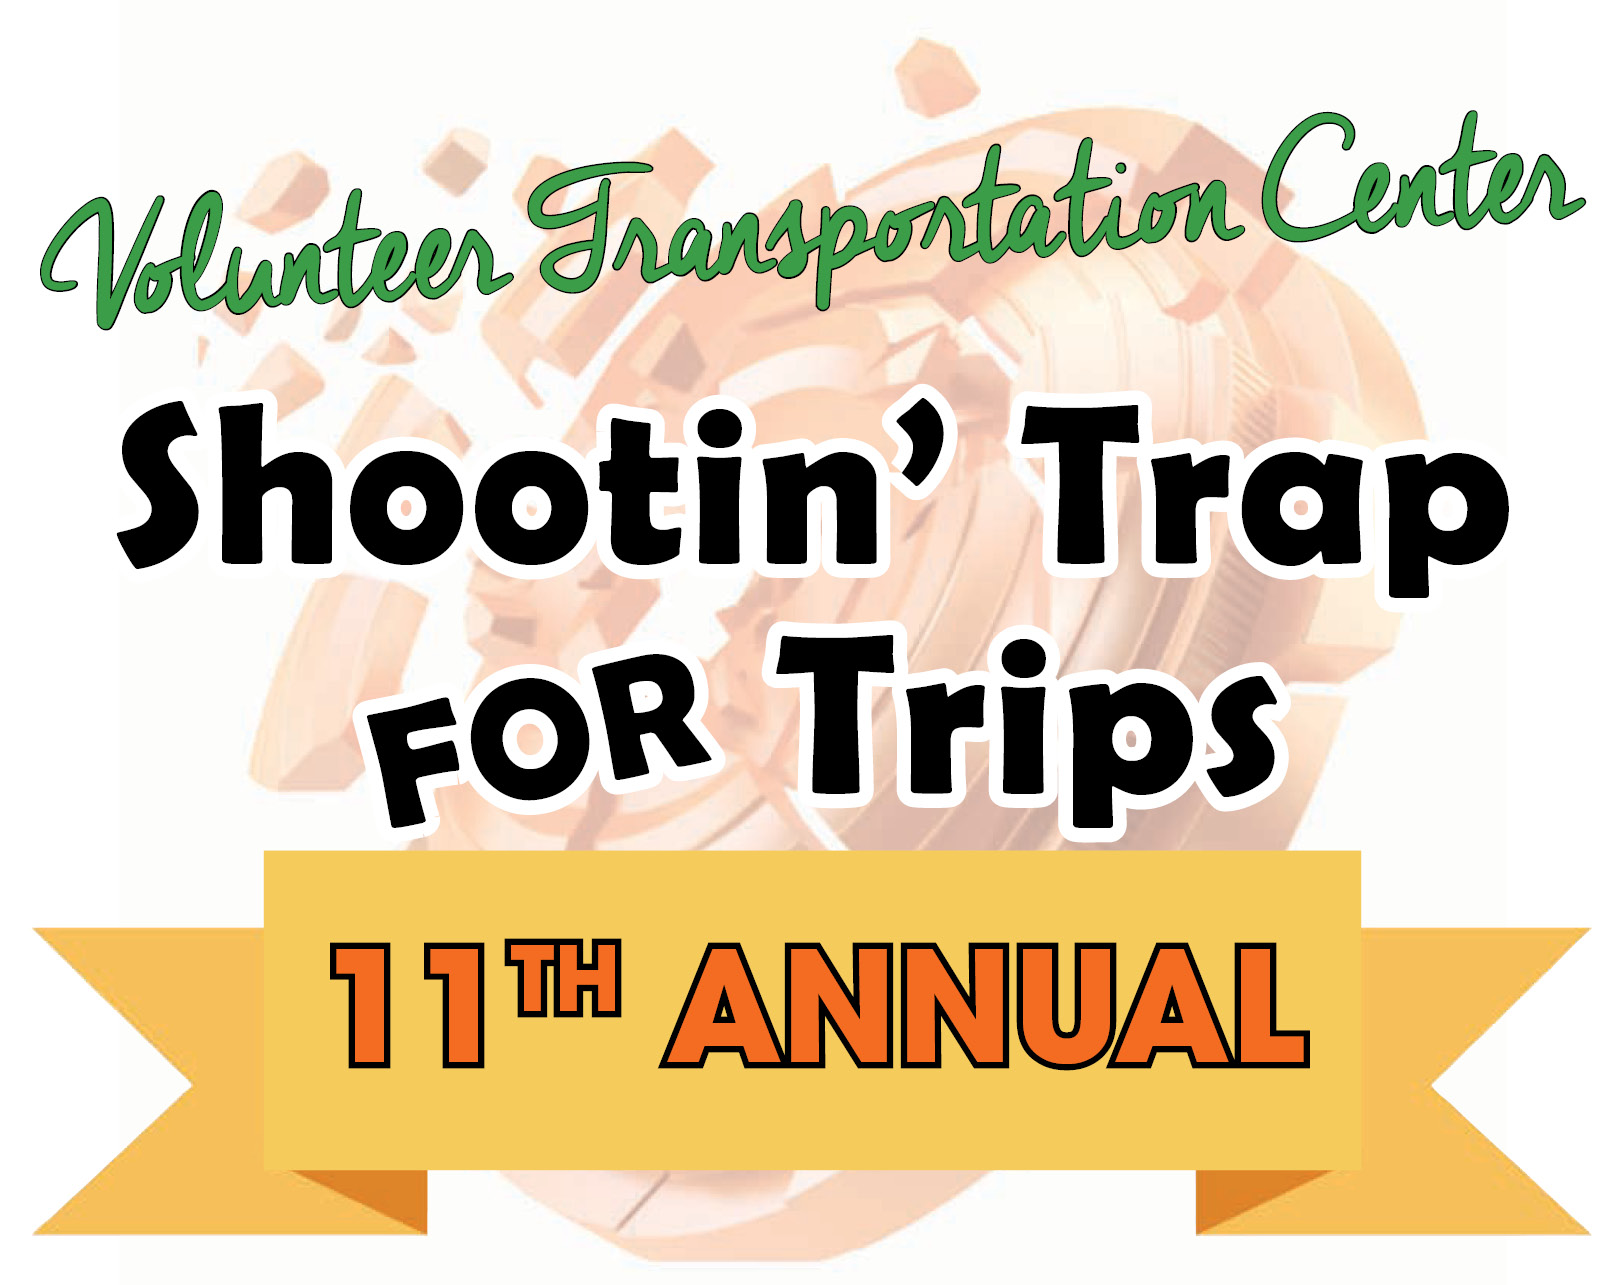 Shootin’ Trap for Trips Annual 50 Bird Shoot